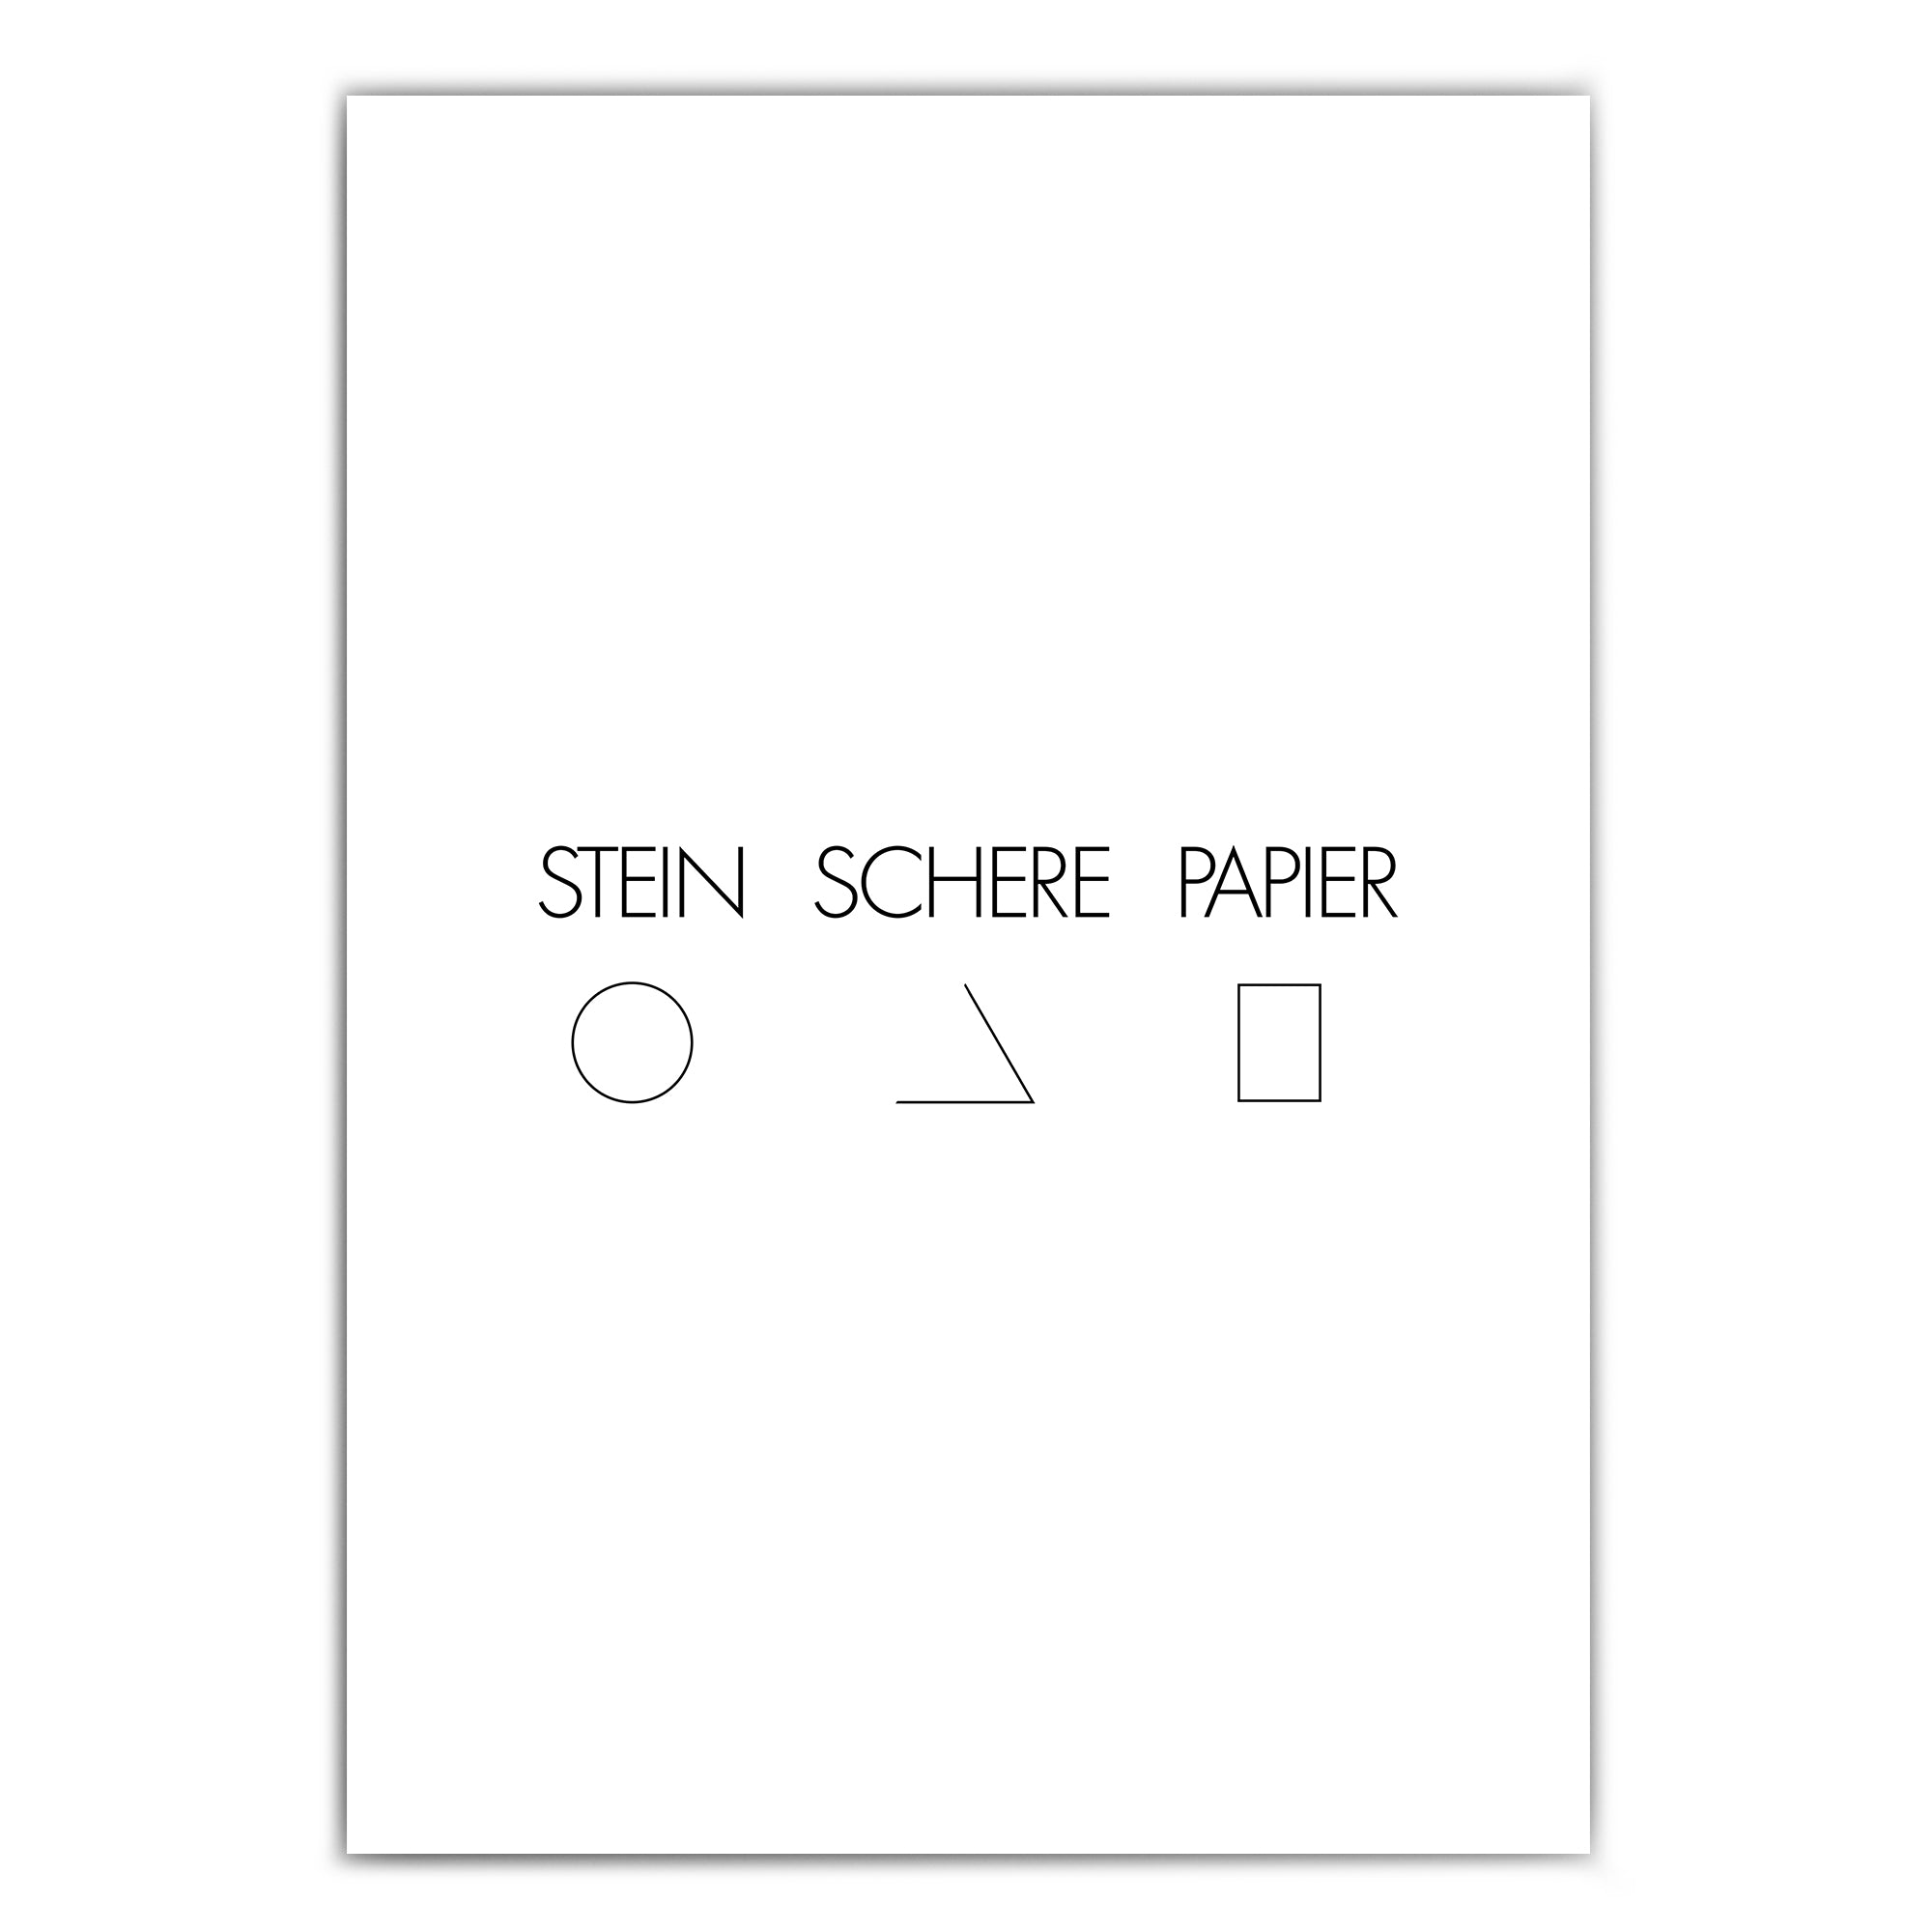 shop-4one-pictures-poster-stein-schwere-papier-schwarz-weiss-typografie-quotes-bild-clean-minimalistisch-a4.jpg